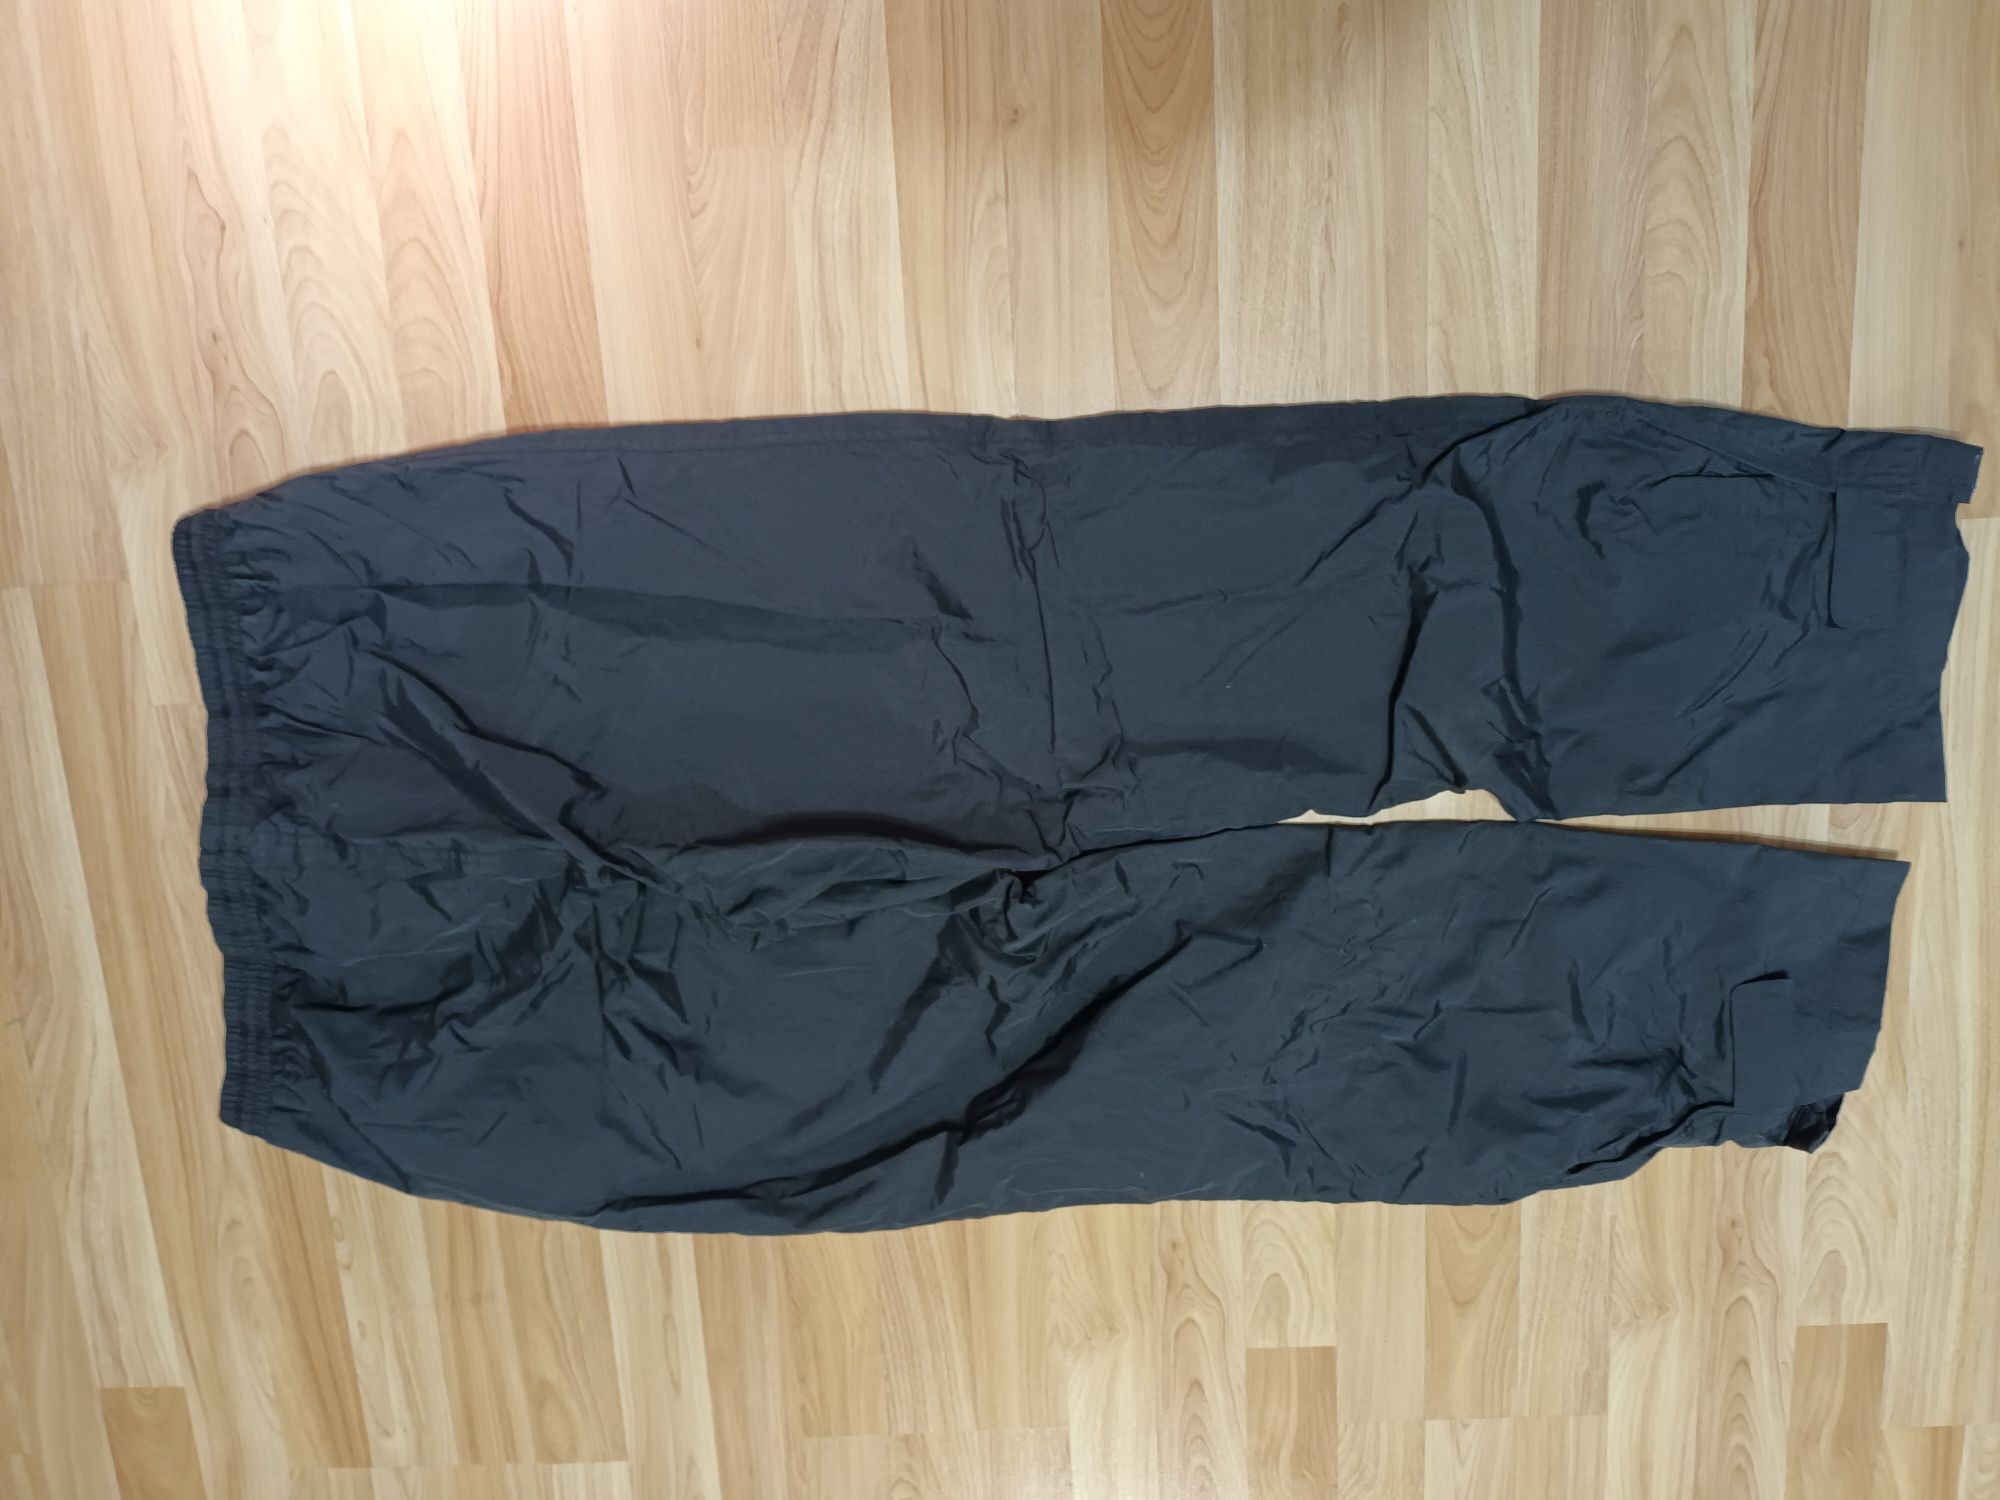 Hi-Tec spodnie techniczne typu schell rozmiar XL